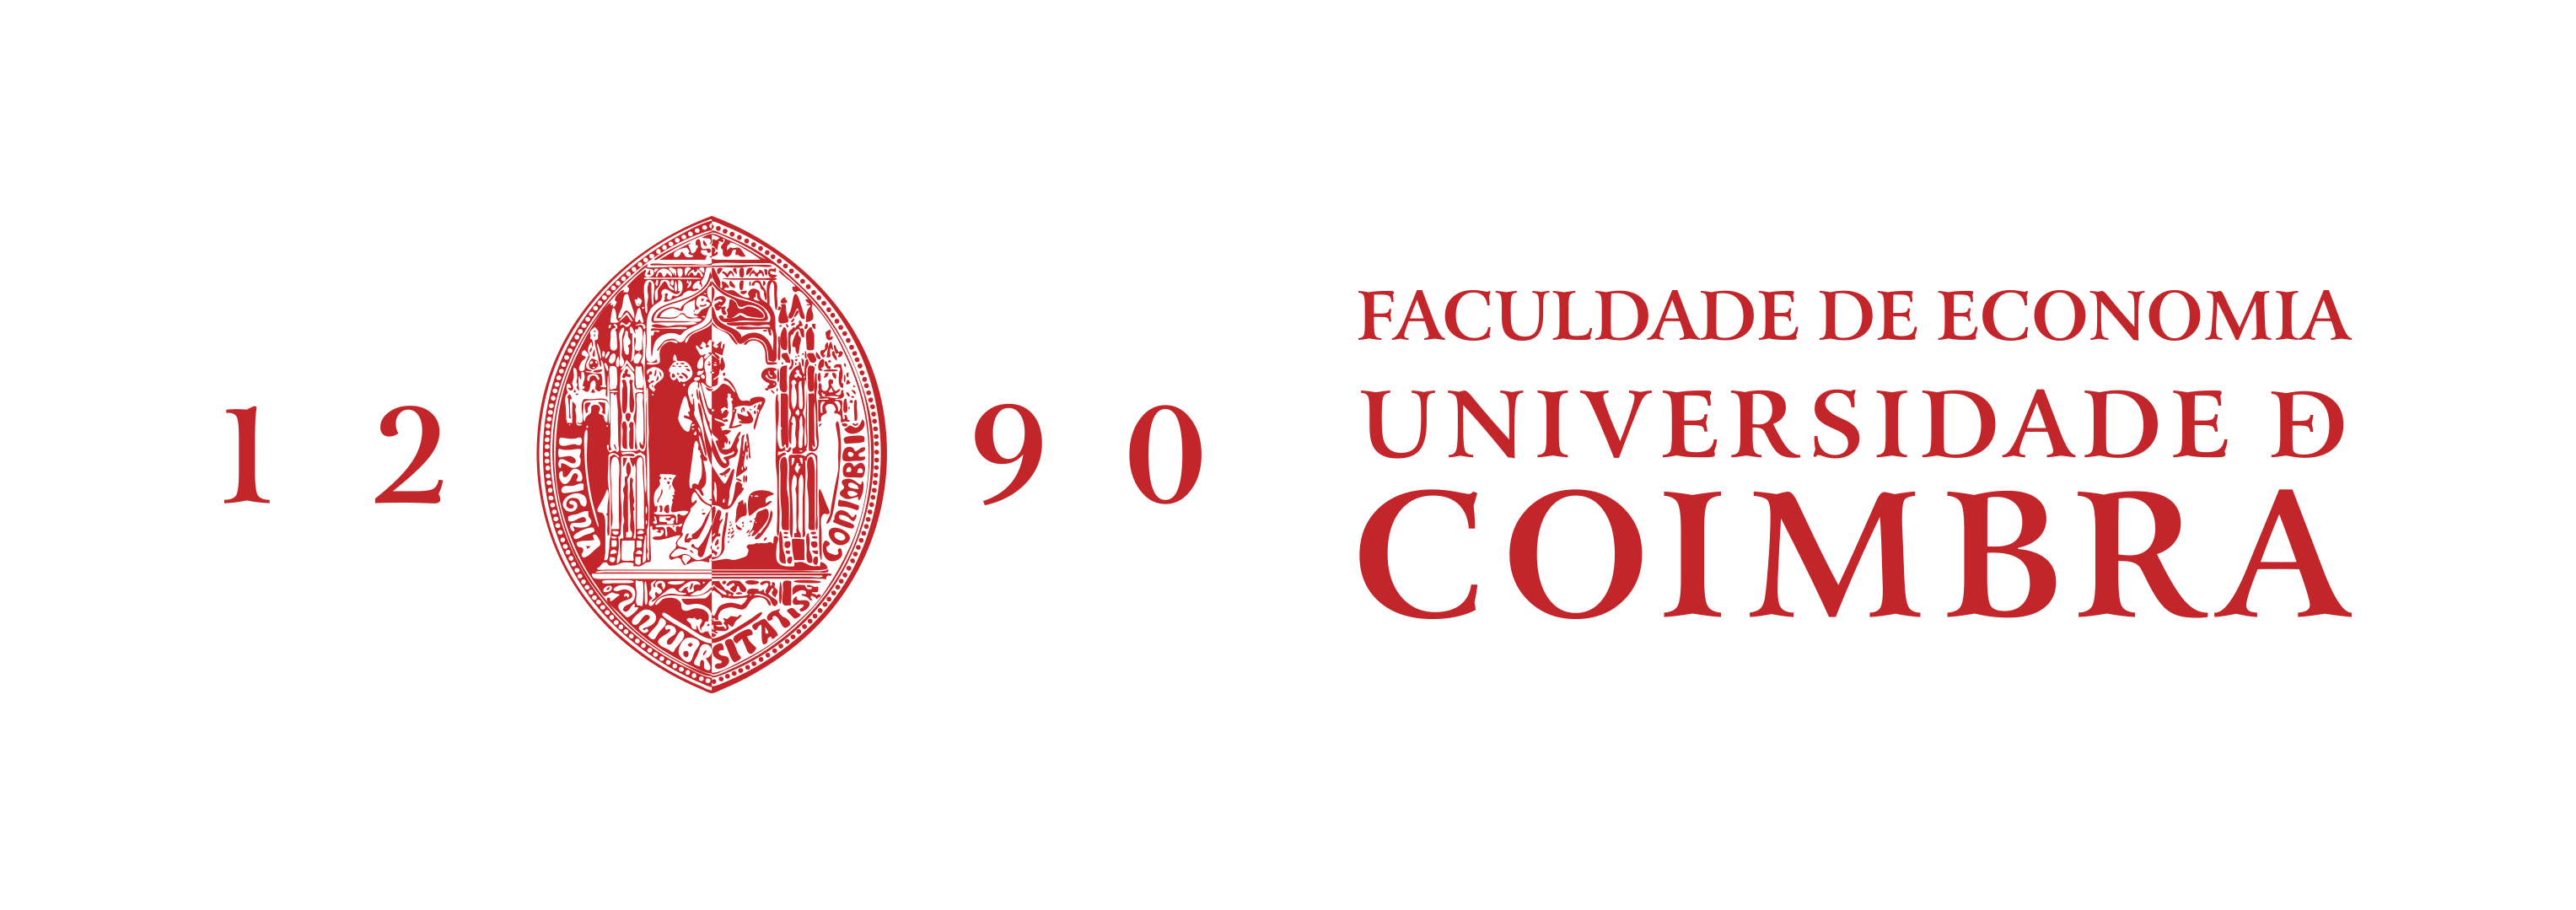 Faculdade Economia Universidade de Coimbra